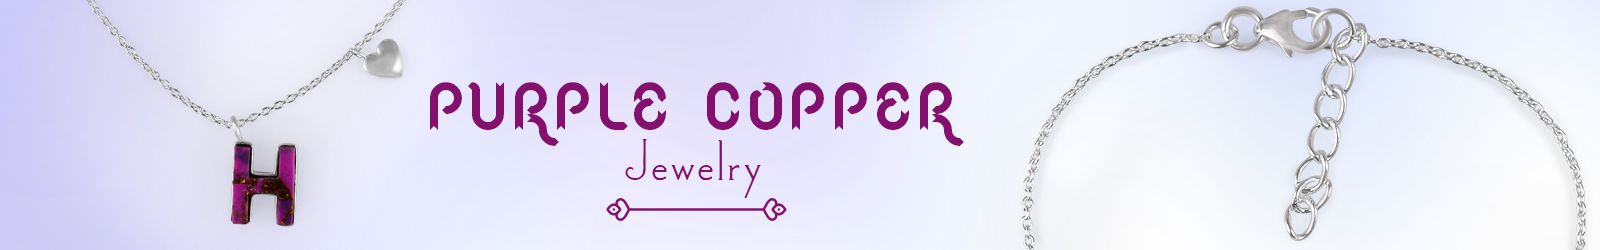 Silver Purple Copper Jewelry Wholesale Supplier